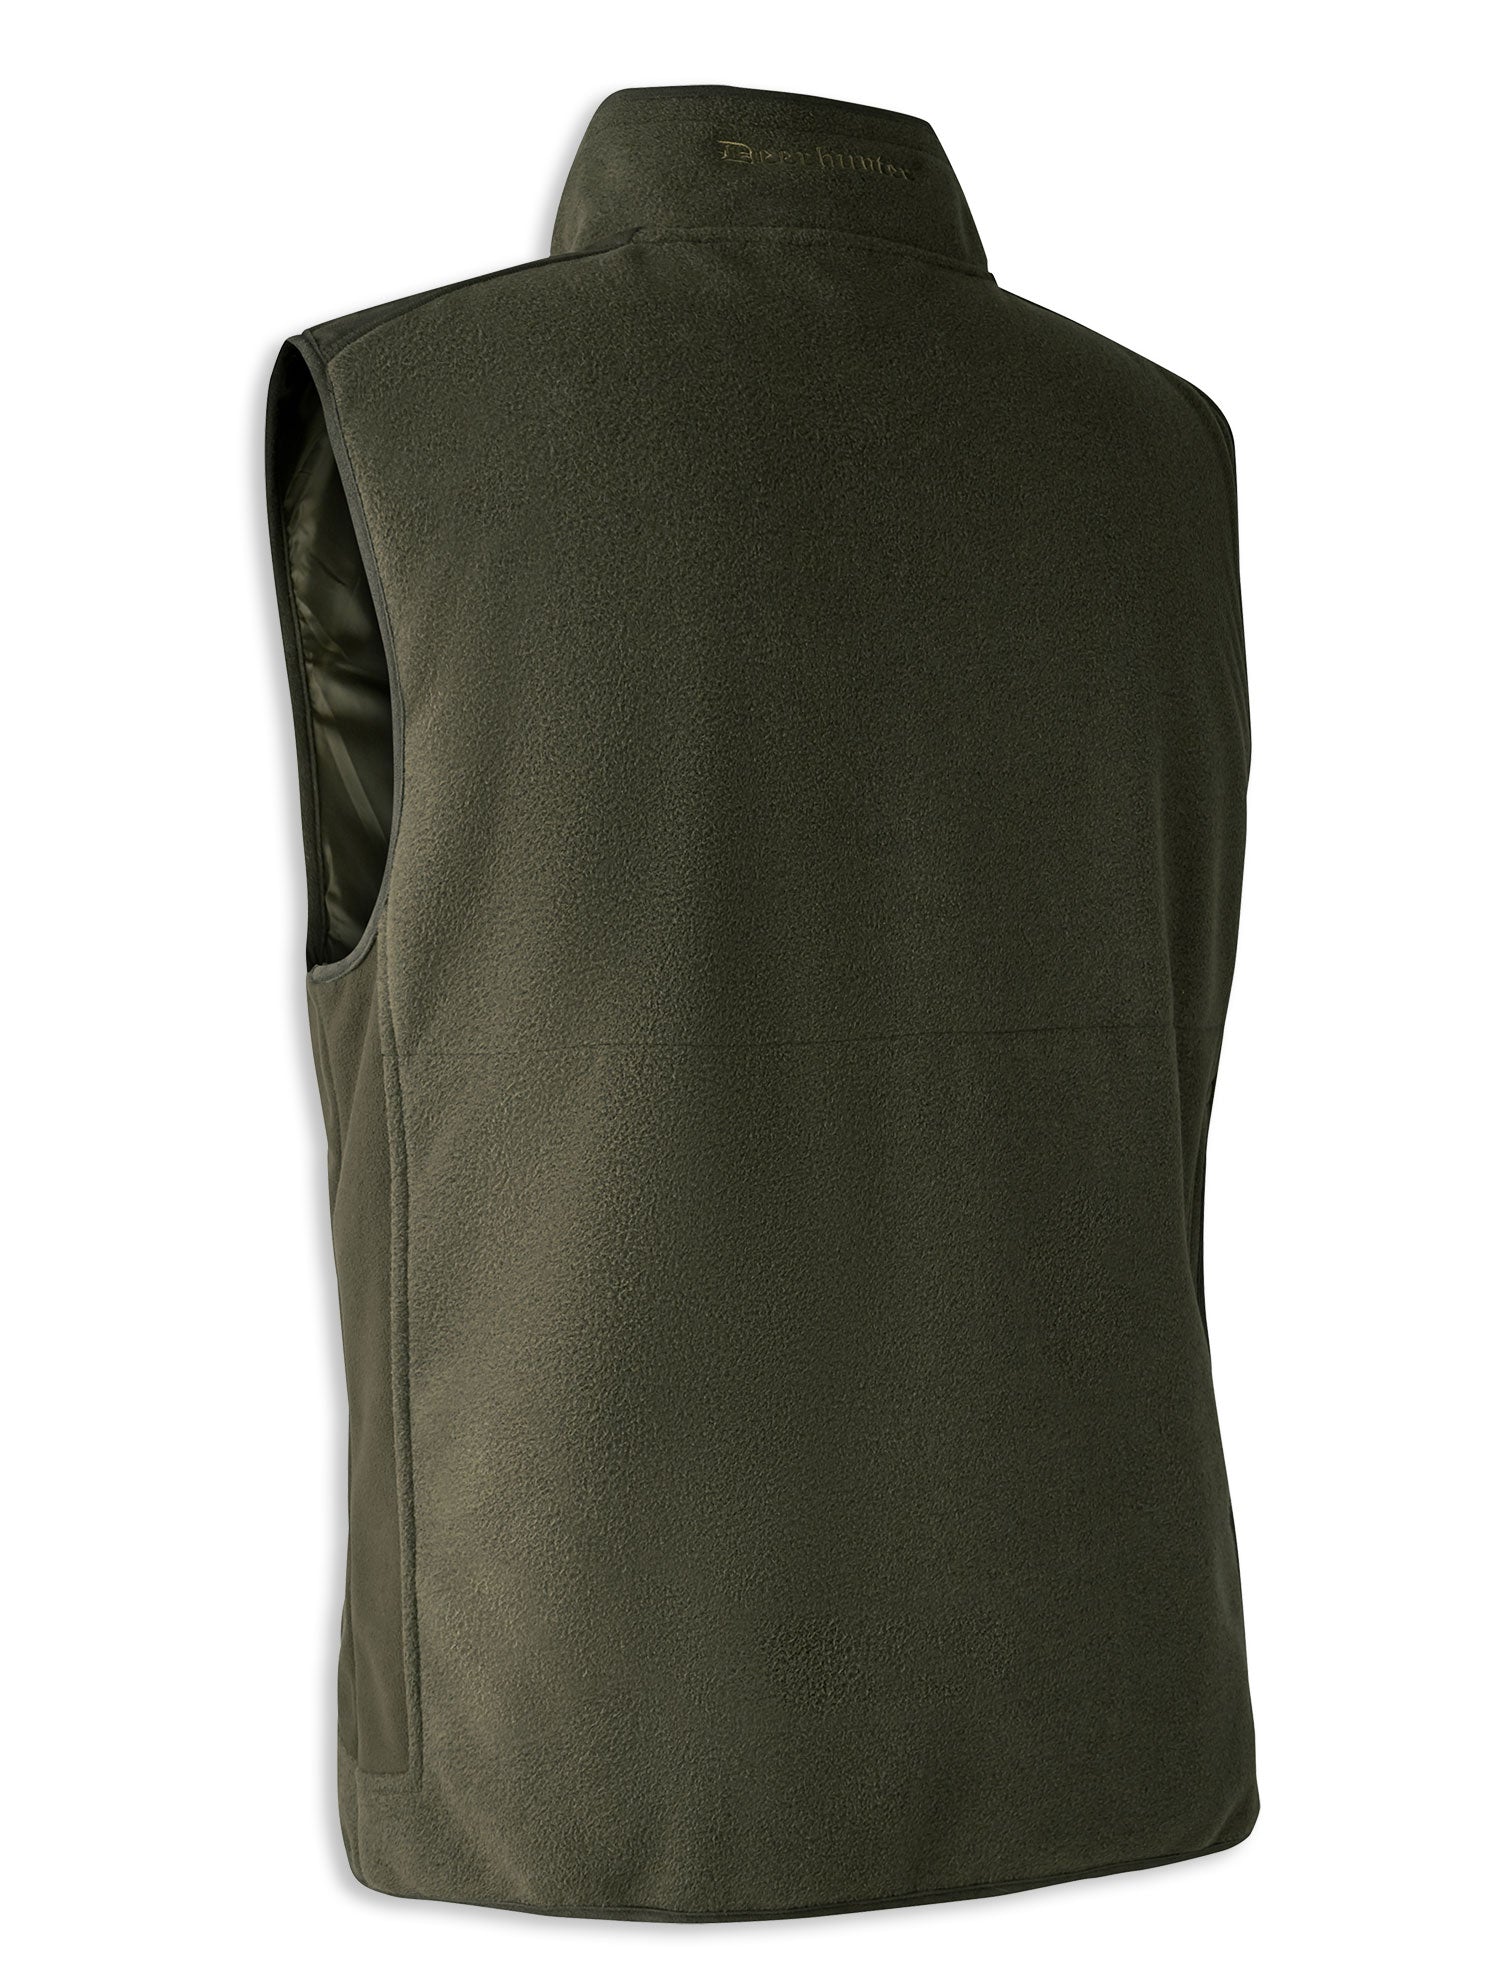 Back view Waterproof Graphite Green Deerhunter Gamekeeper Bonded Fleece Waistcoat